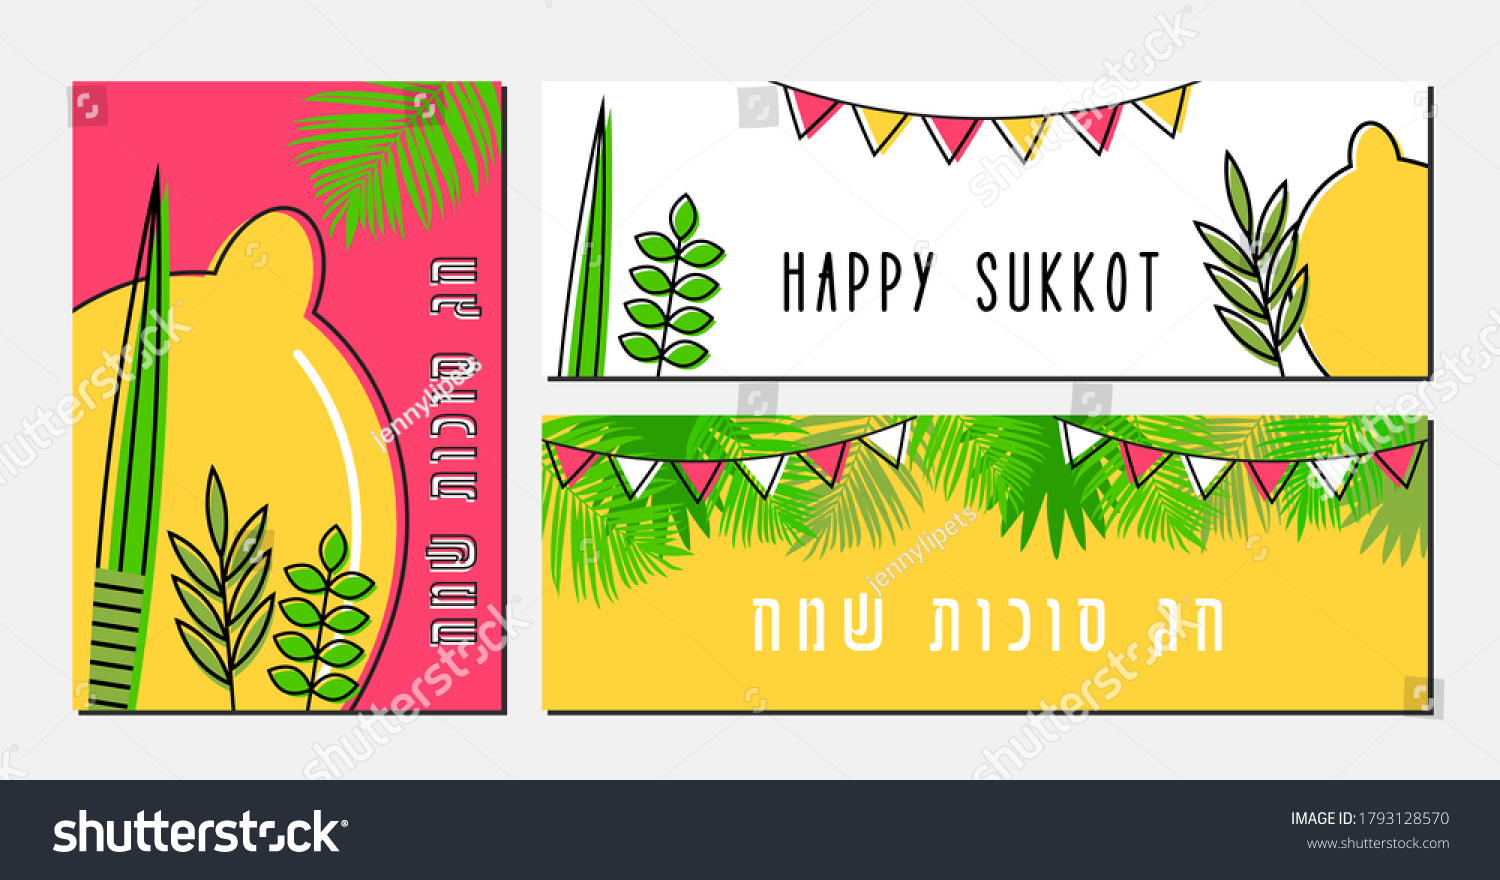 Sukkot images, photos et images vectorielles de stock Shutterstock